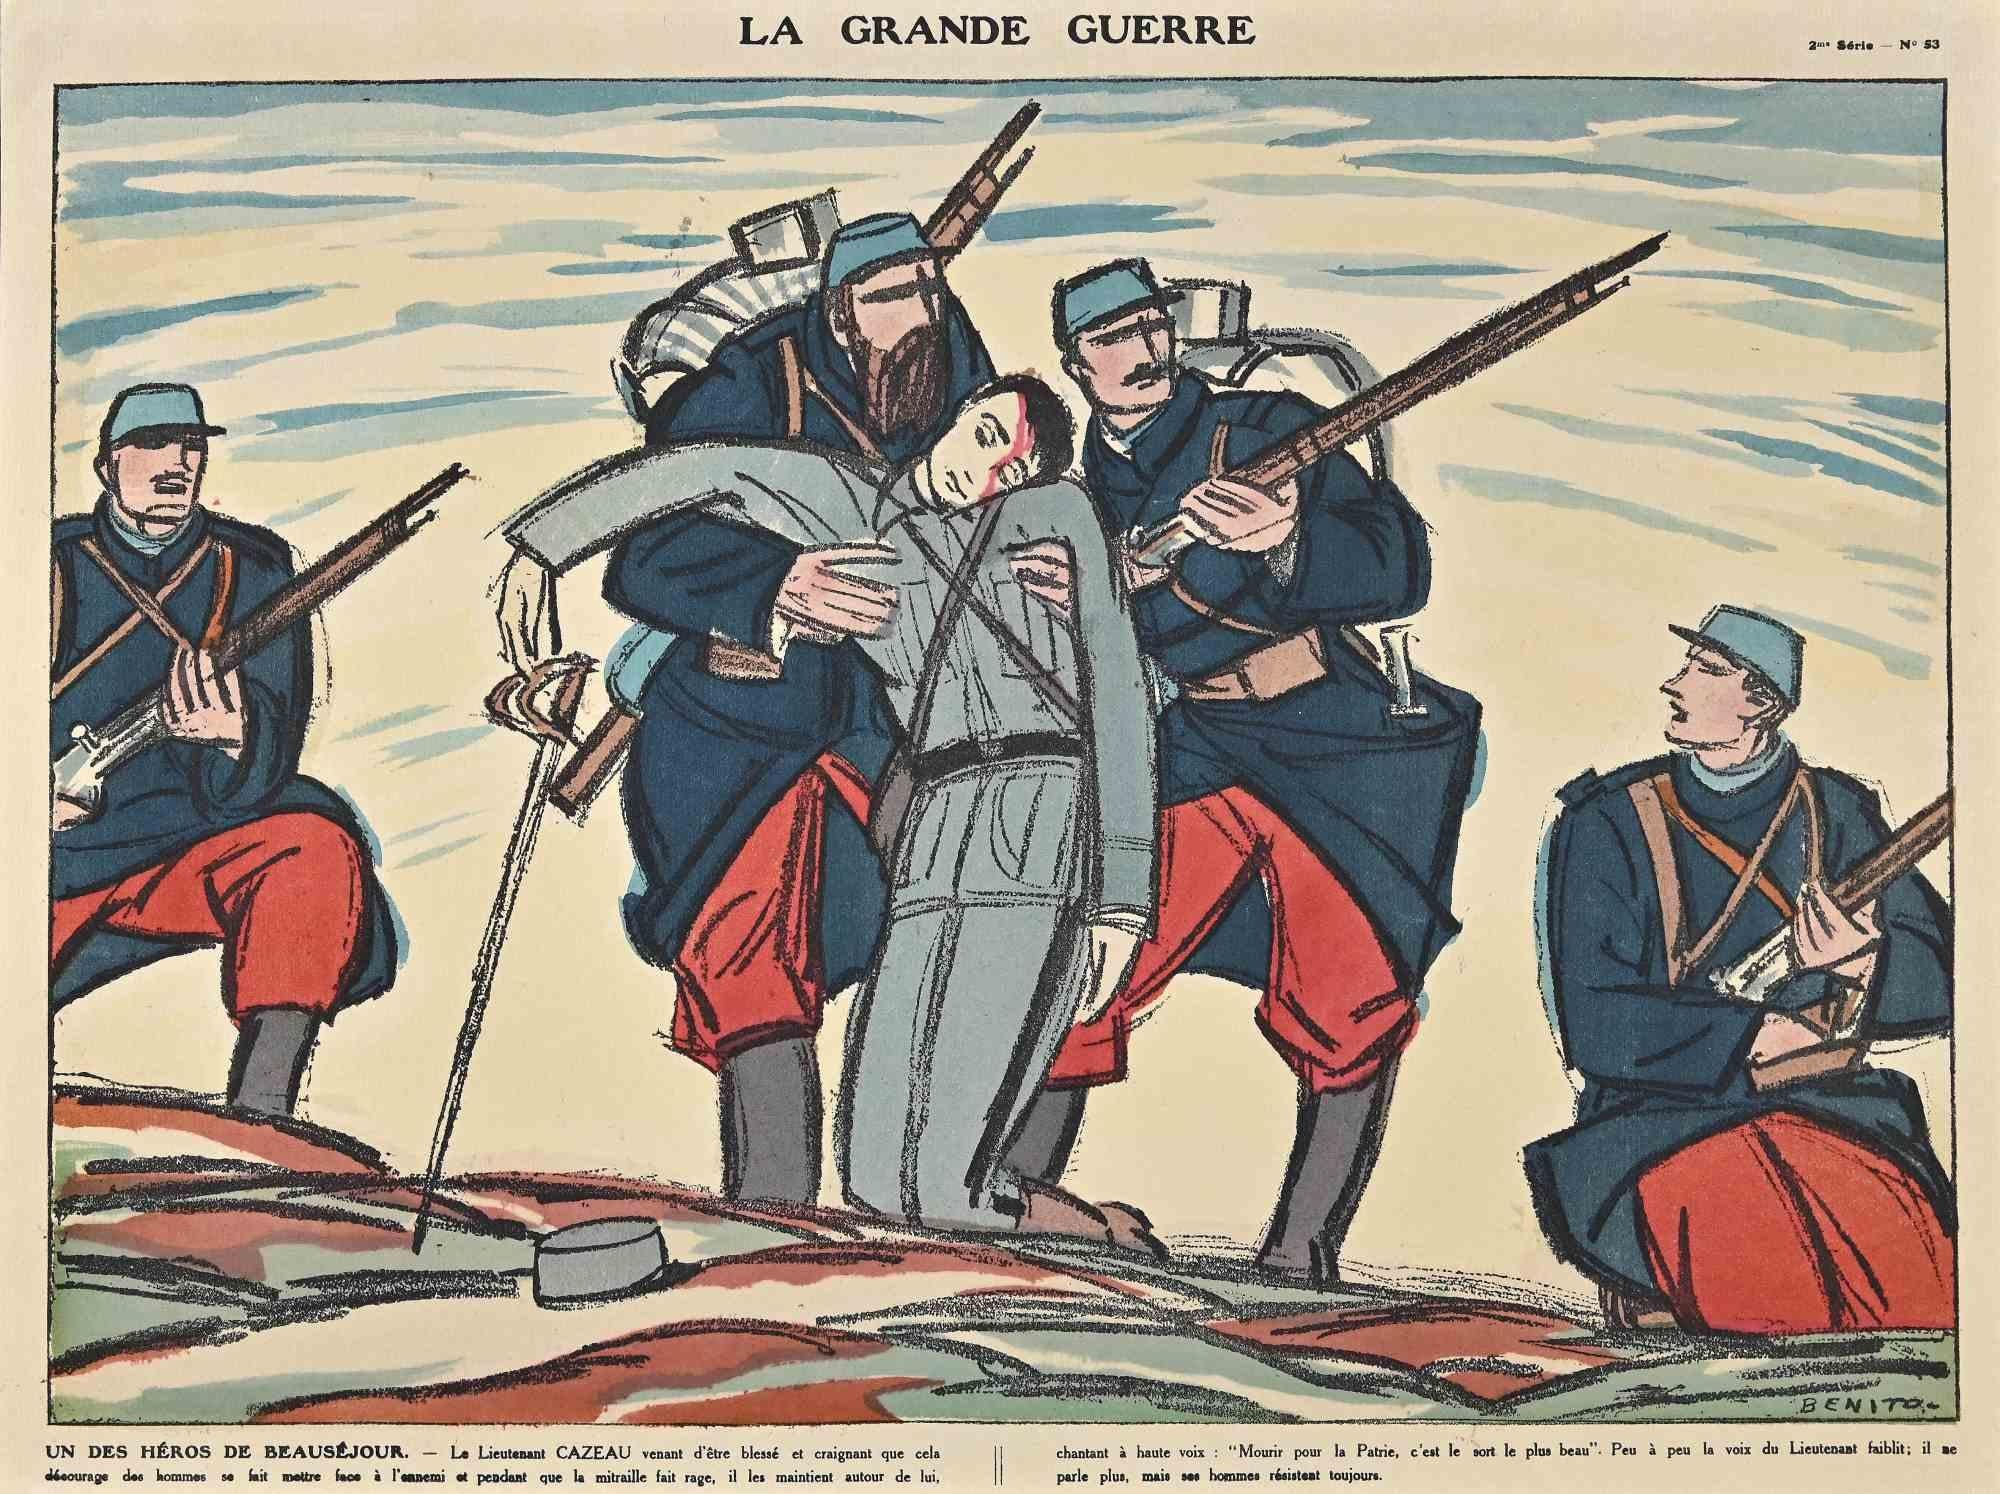 La Grande Guerre – Holzschnitt, realisiert von Benito – frühes 20. Jahrhundert